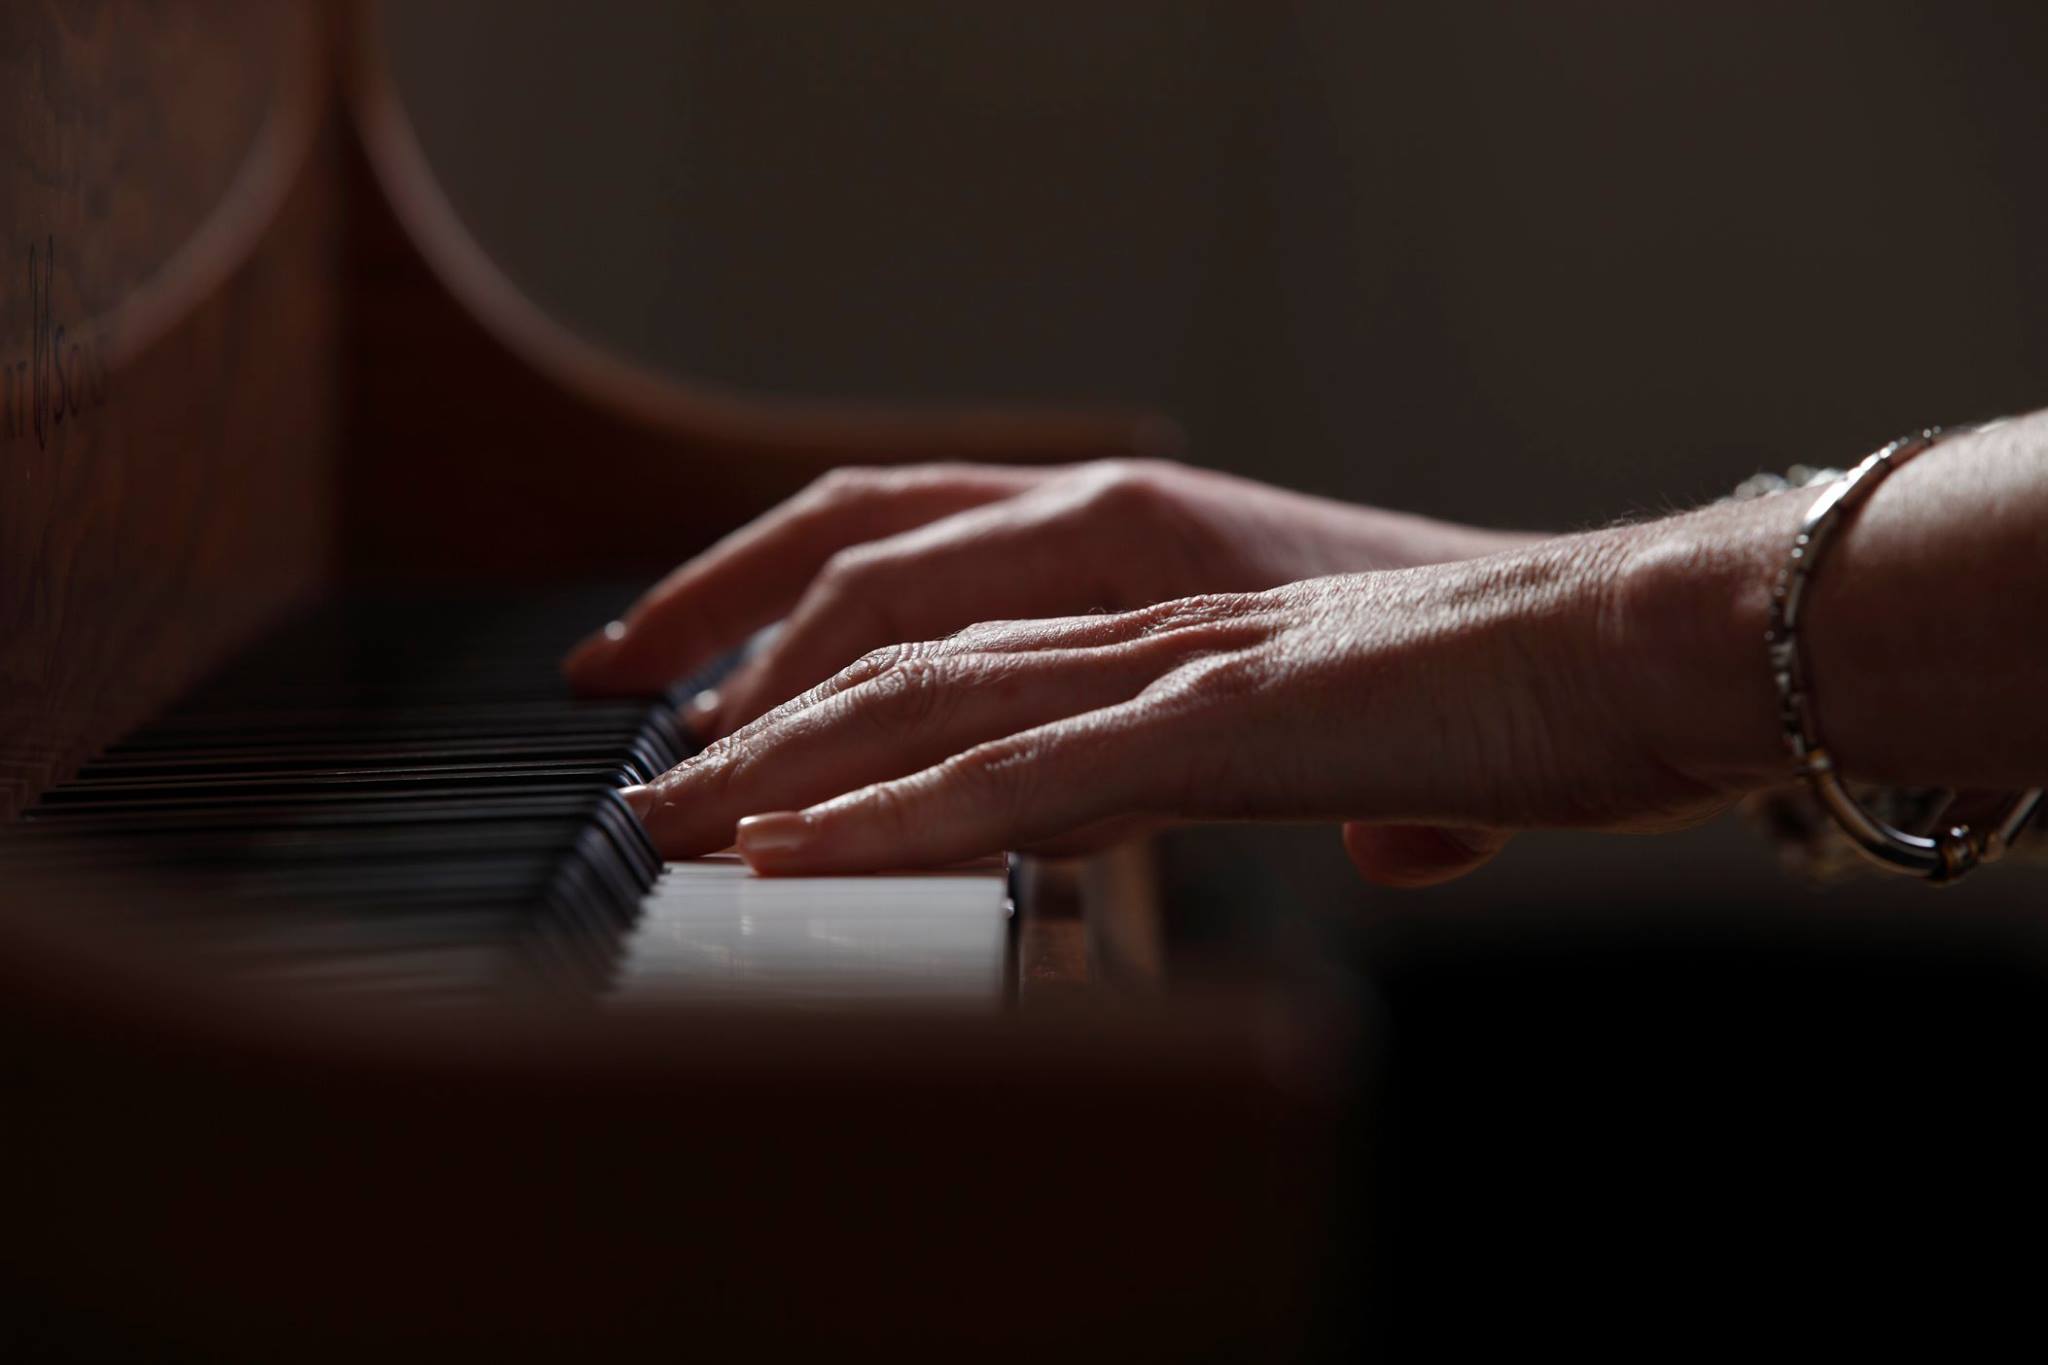 Fiona Joy, hands on piano.